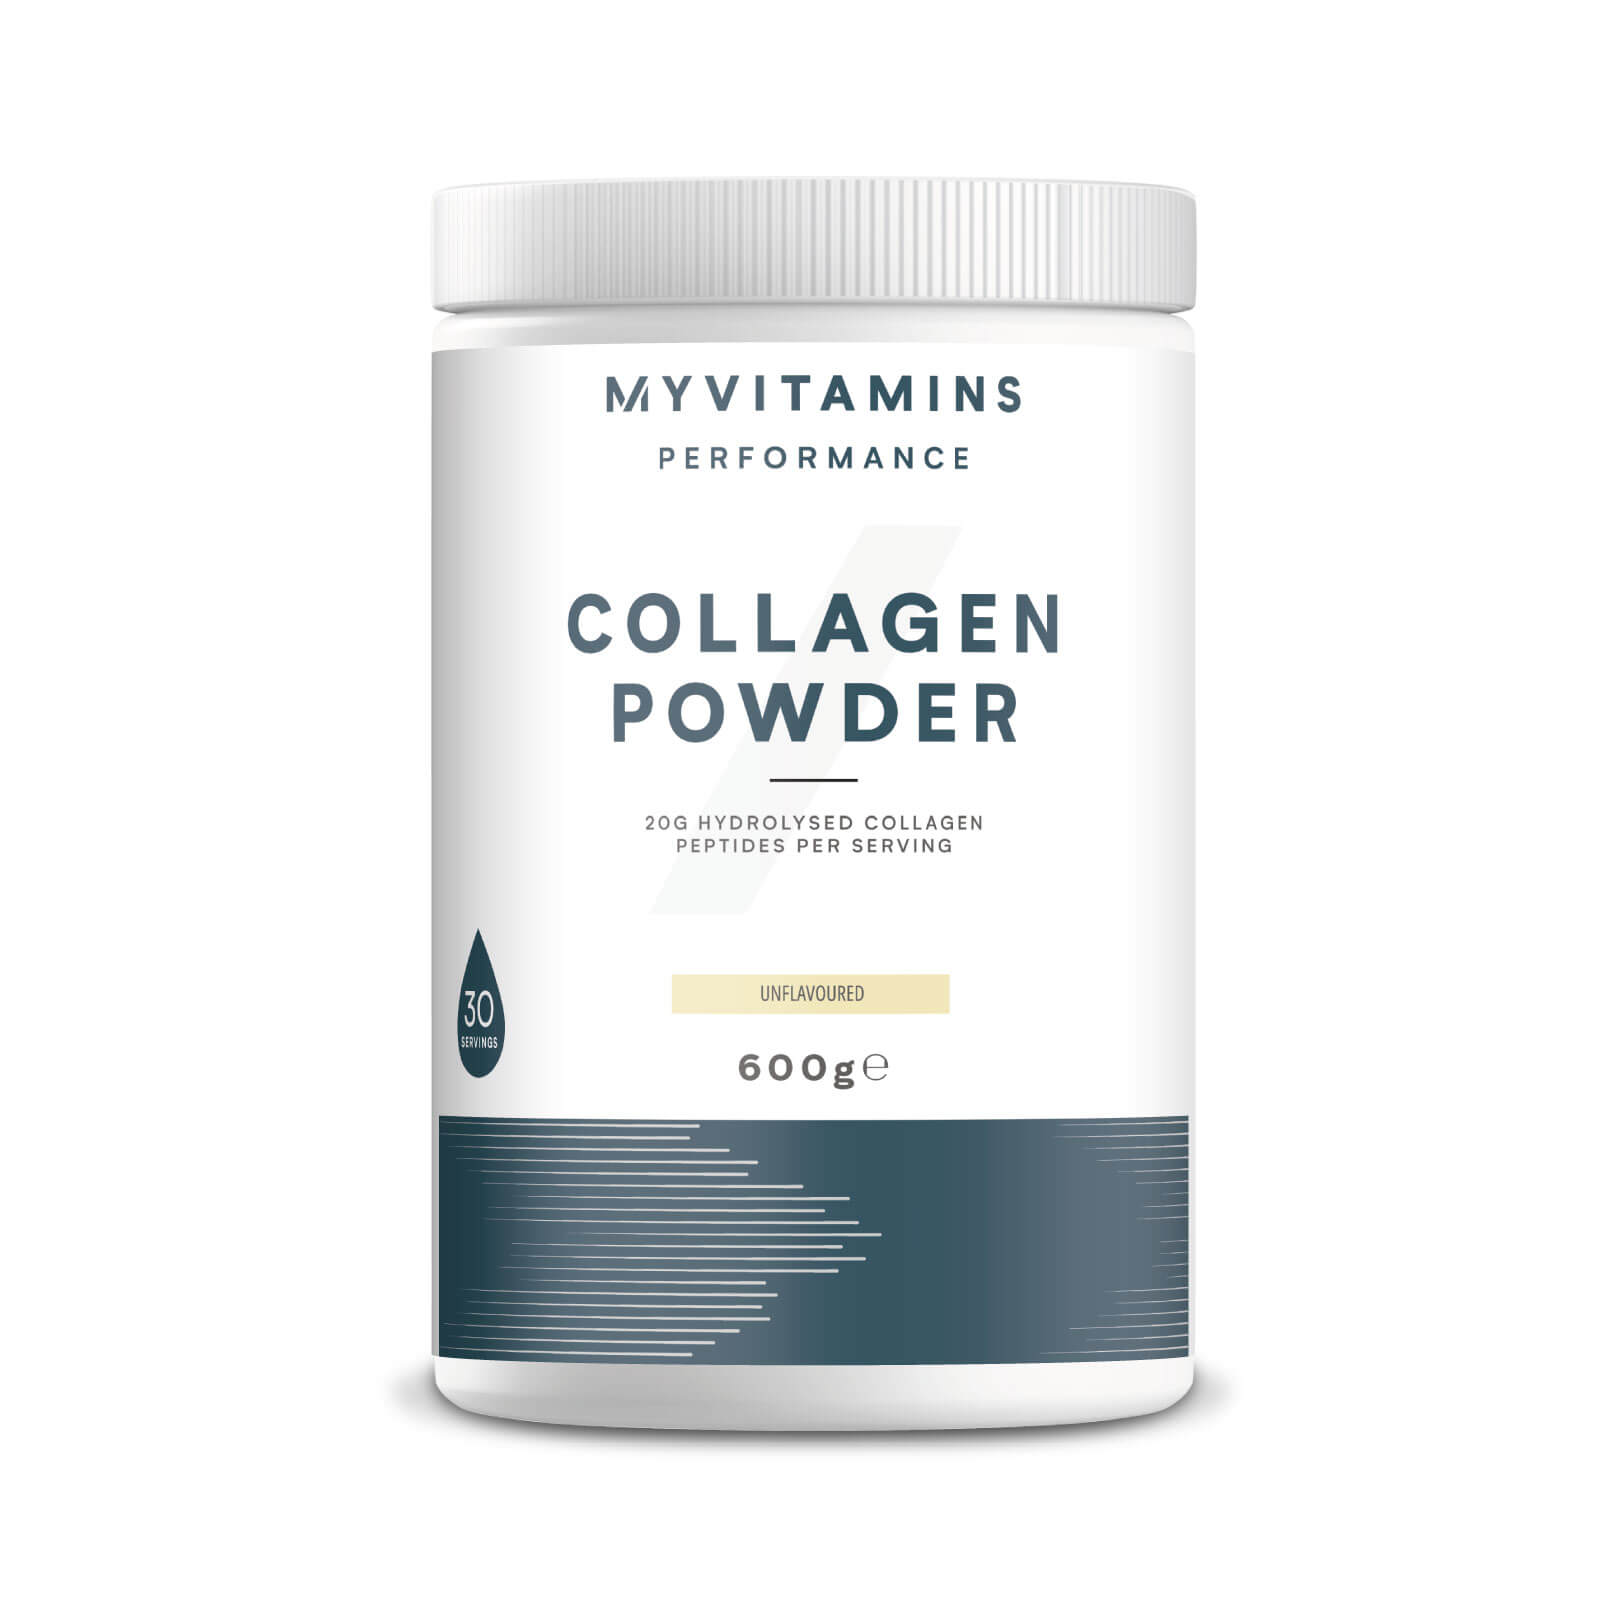 Myvitamins Collagen Powder Tub (WE) - 30servings - Unflavoured